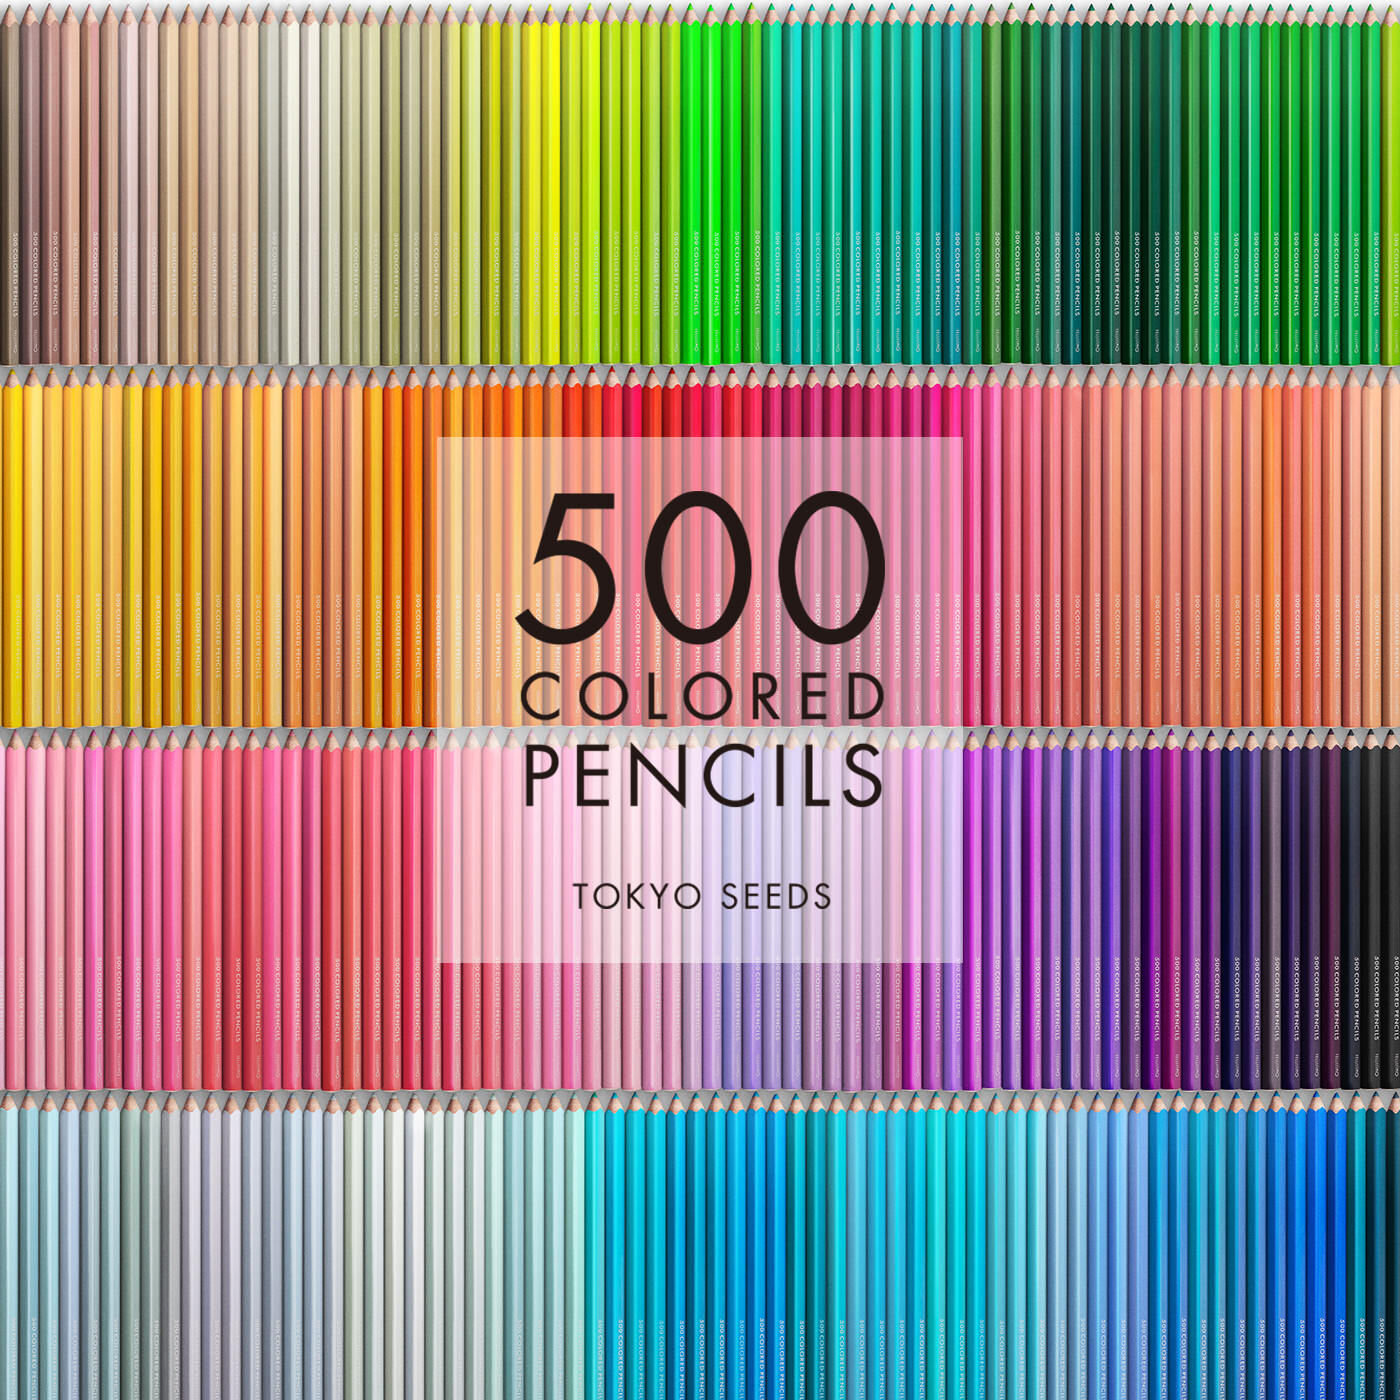 Real Stock|【57/500 PRETTY PIGGY】500色の色えんぴつ TOKYO SEEDS|1992年、世界初の「500色」という膨大な色数の色えんぴつが誕生して以来、その販売数は発売当初から合わせると、世界55ヵ国10万セット以上。今回、メイド・イン・ジャパンにこだわり、すべてが新しく生まれ変わって登場しました。